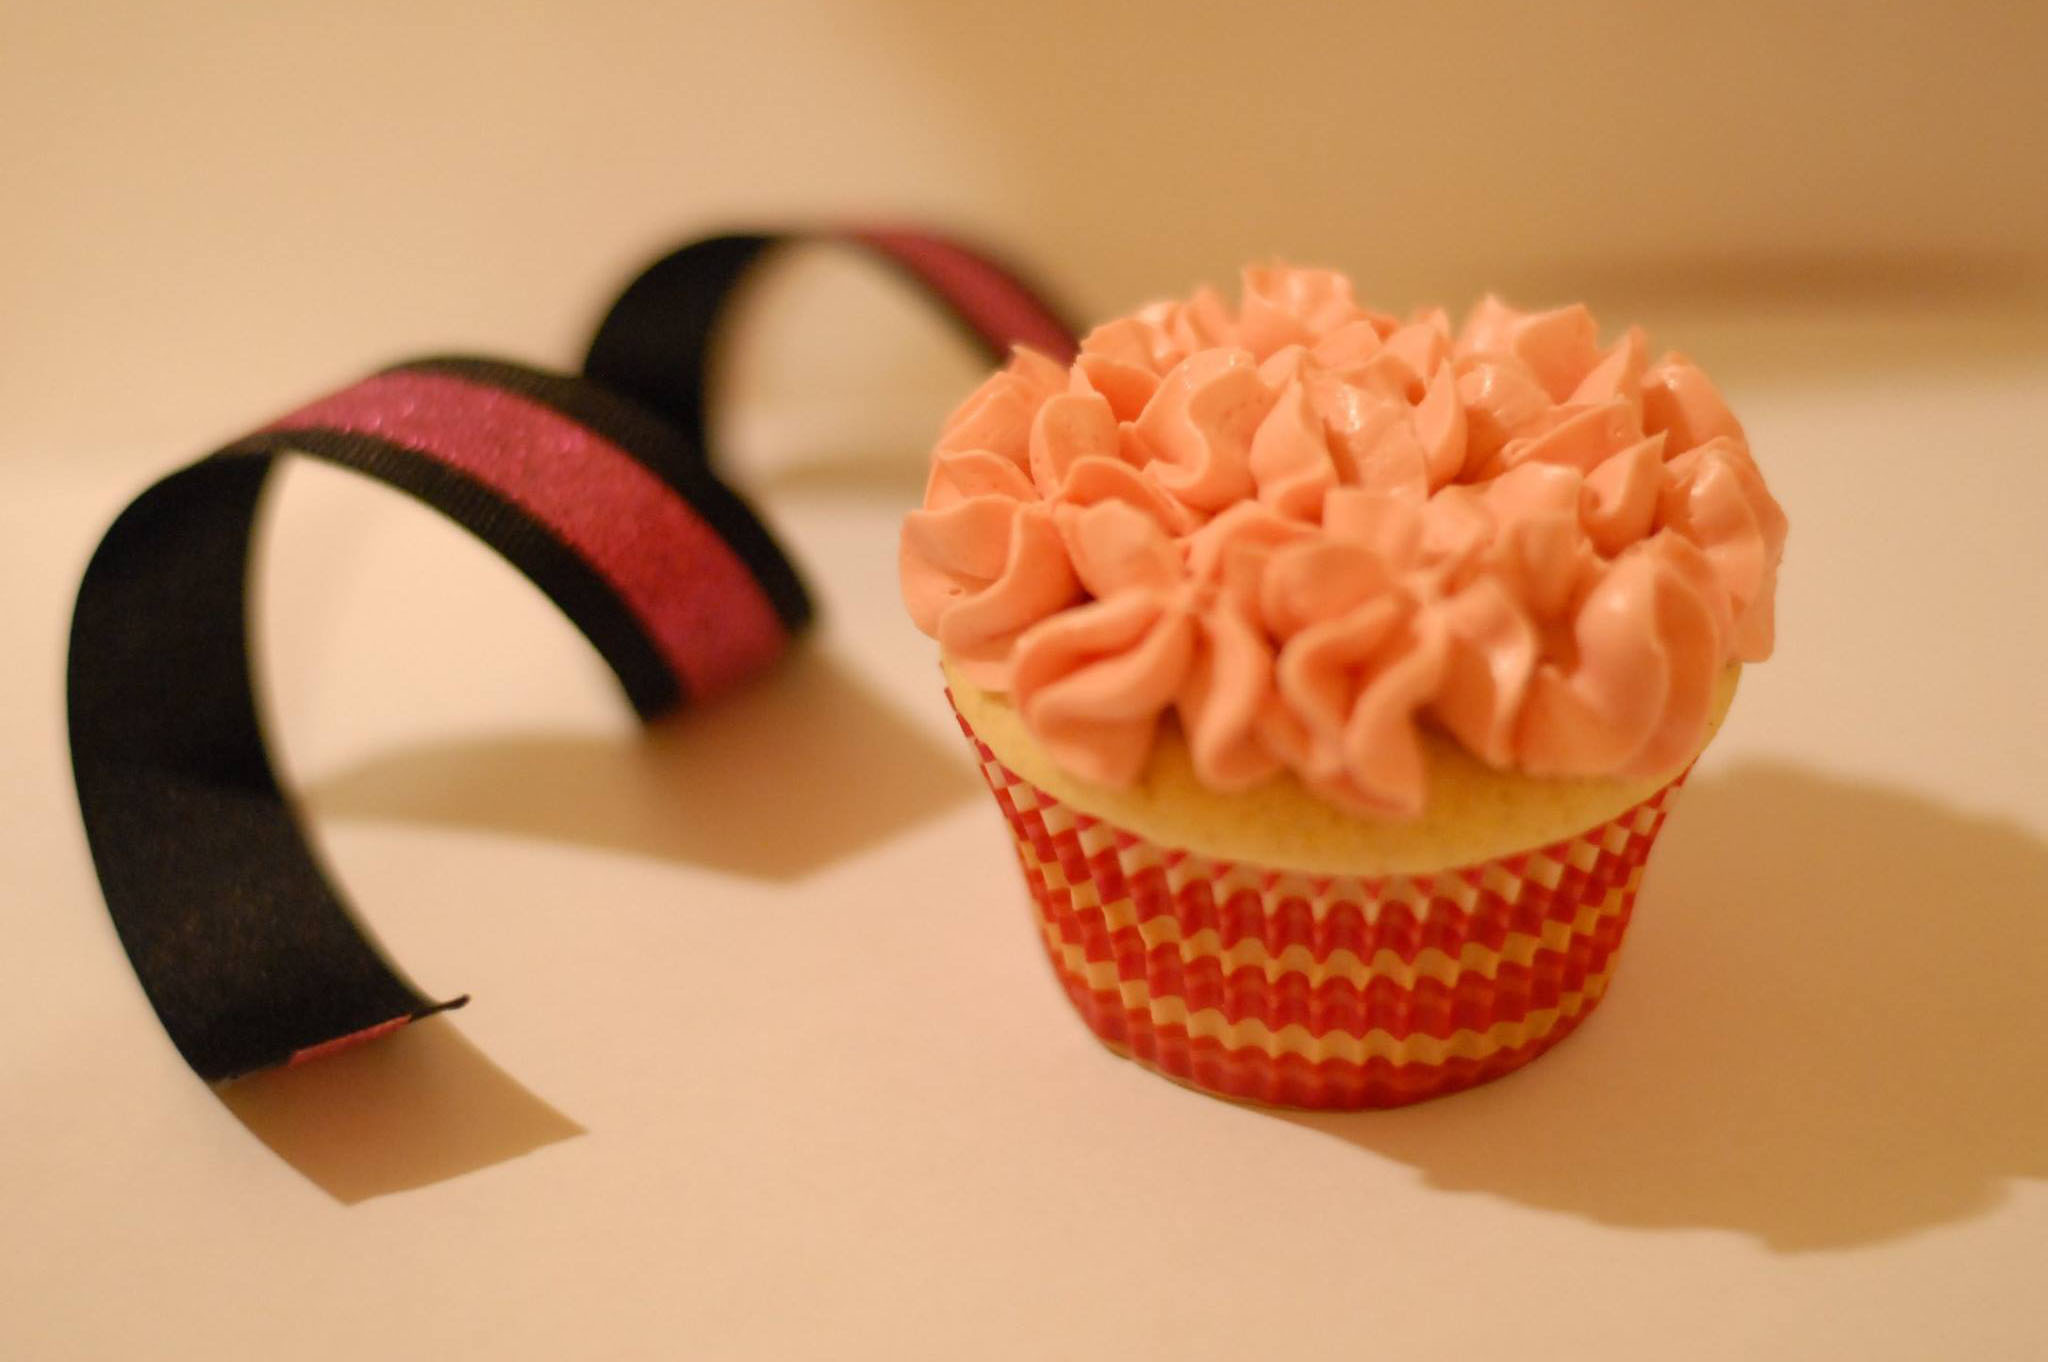 ribbon cake